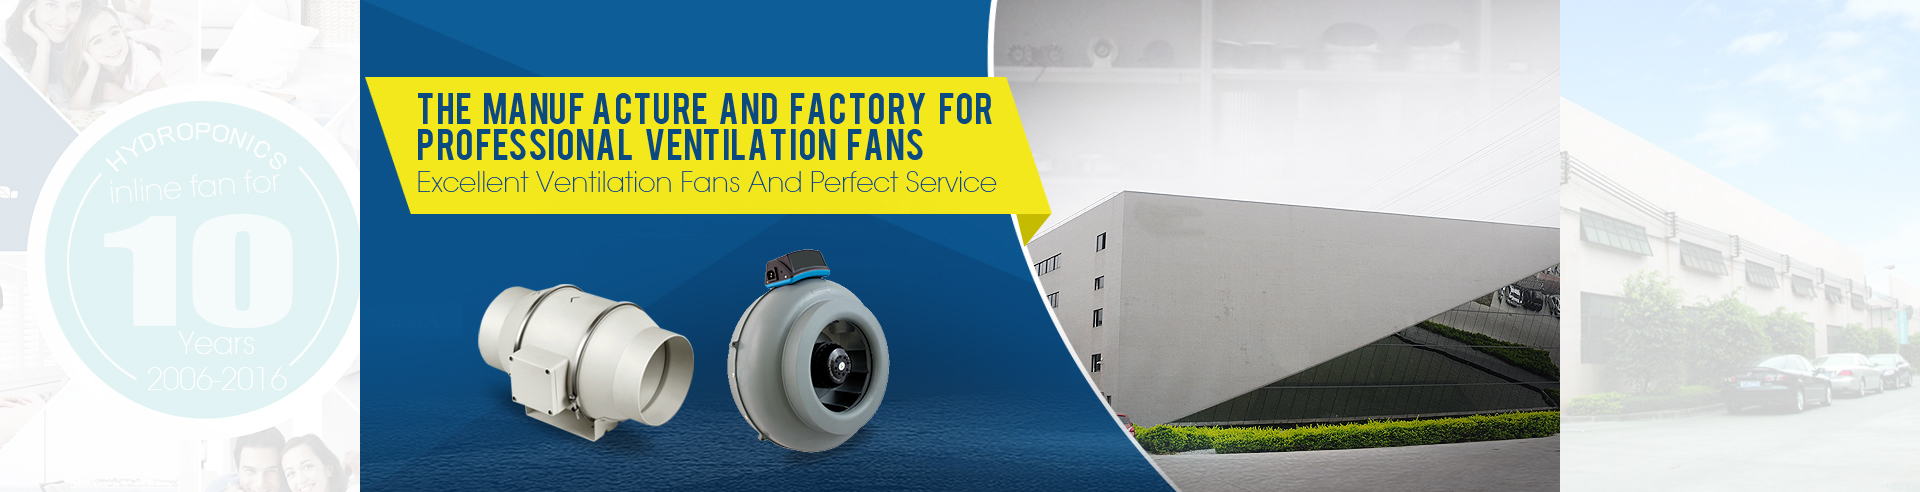 Nussun ventilation inline duct fans